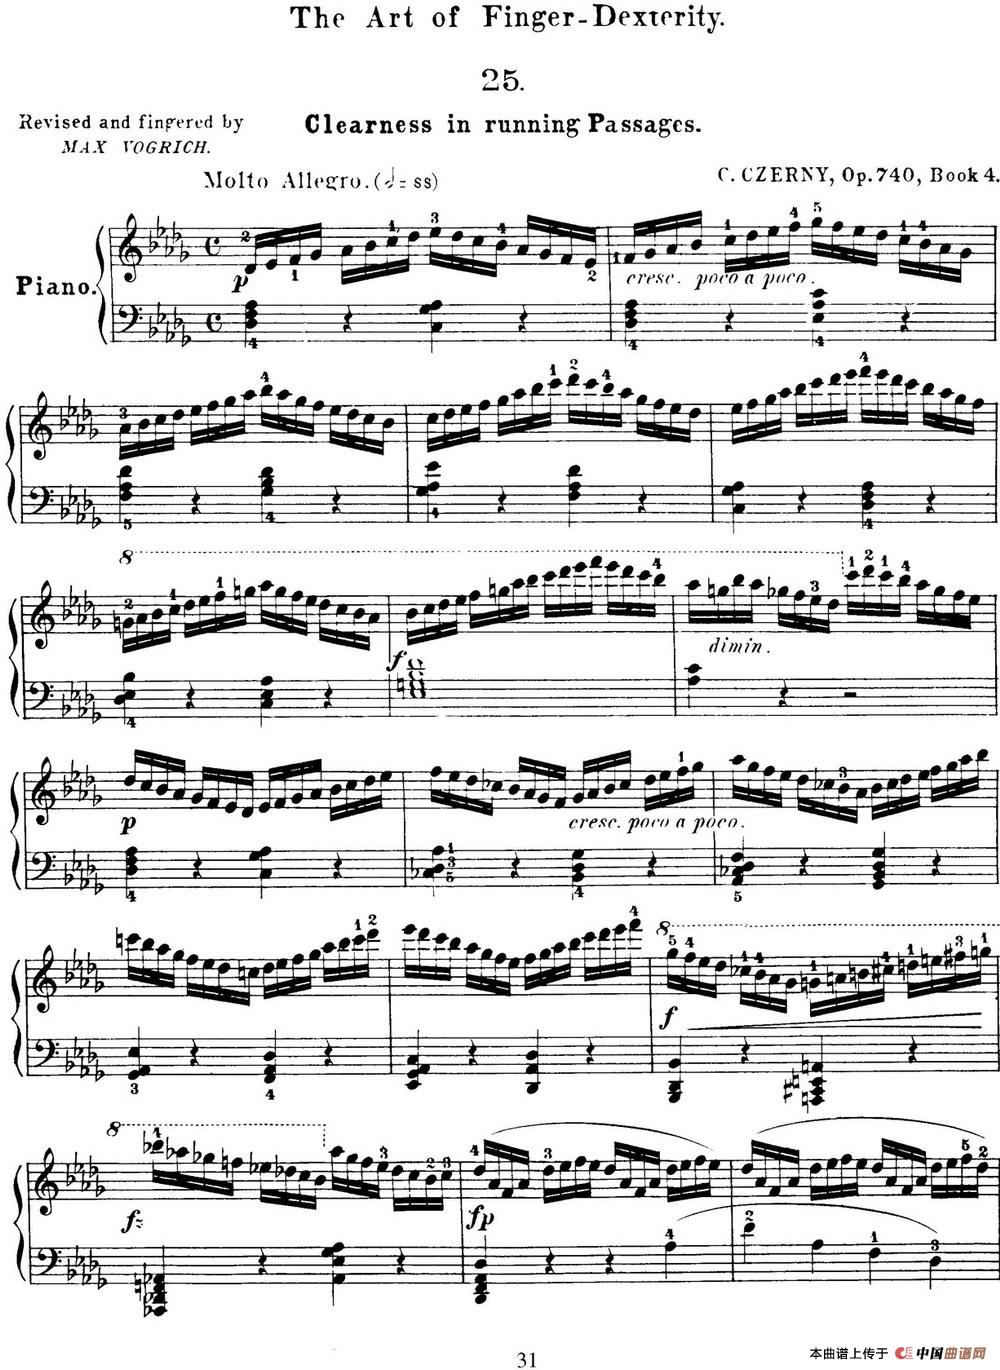 50首车尔尼Op.740钢琴手指灵巧技术练习曲（NO.25）(1)_C740_页面_090.jpg